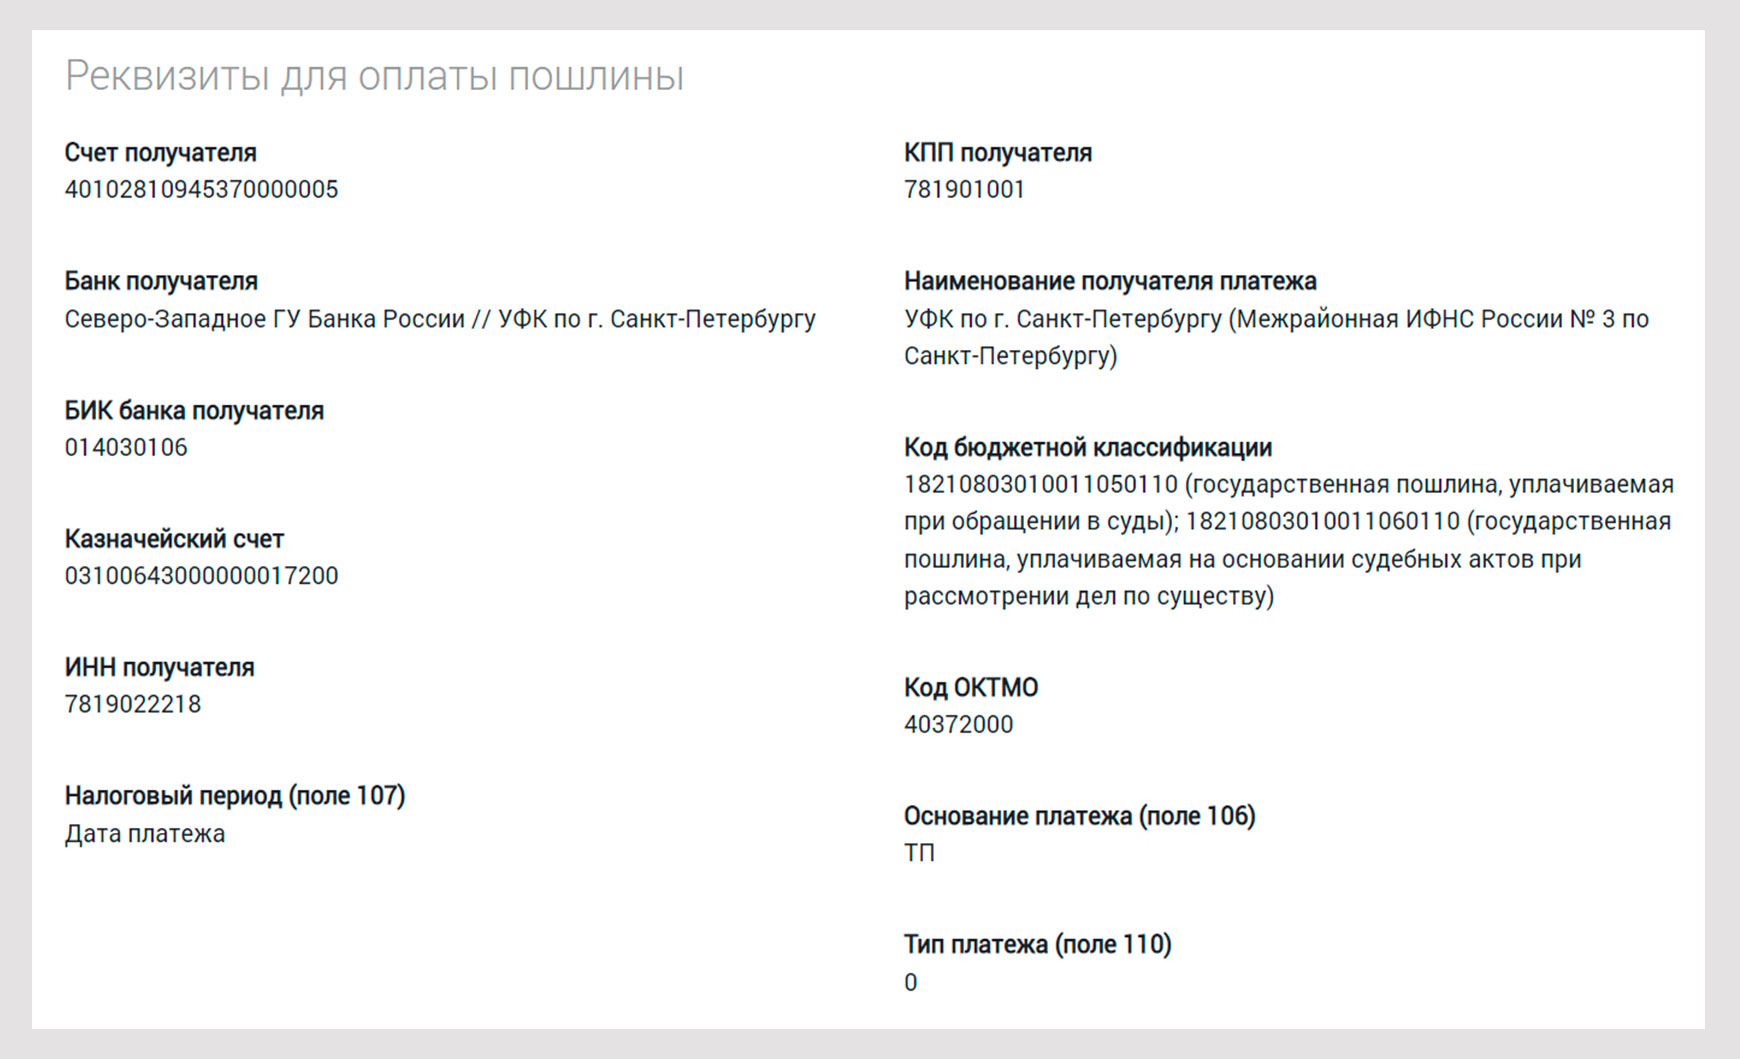 Реквизиты для оплаты пошлины по 114 судебному участку СПб.